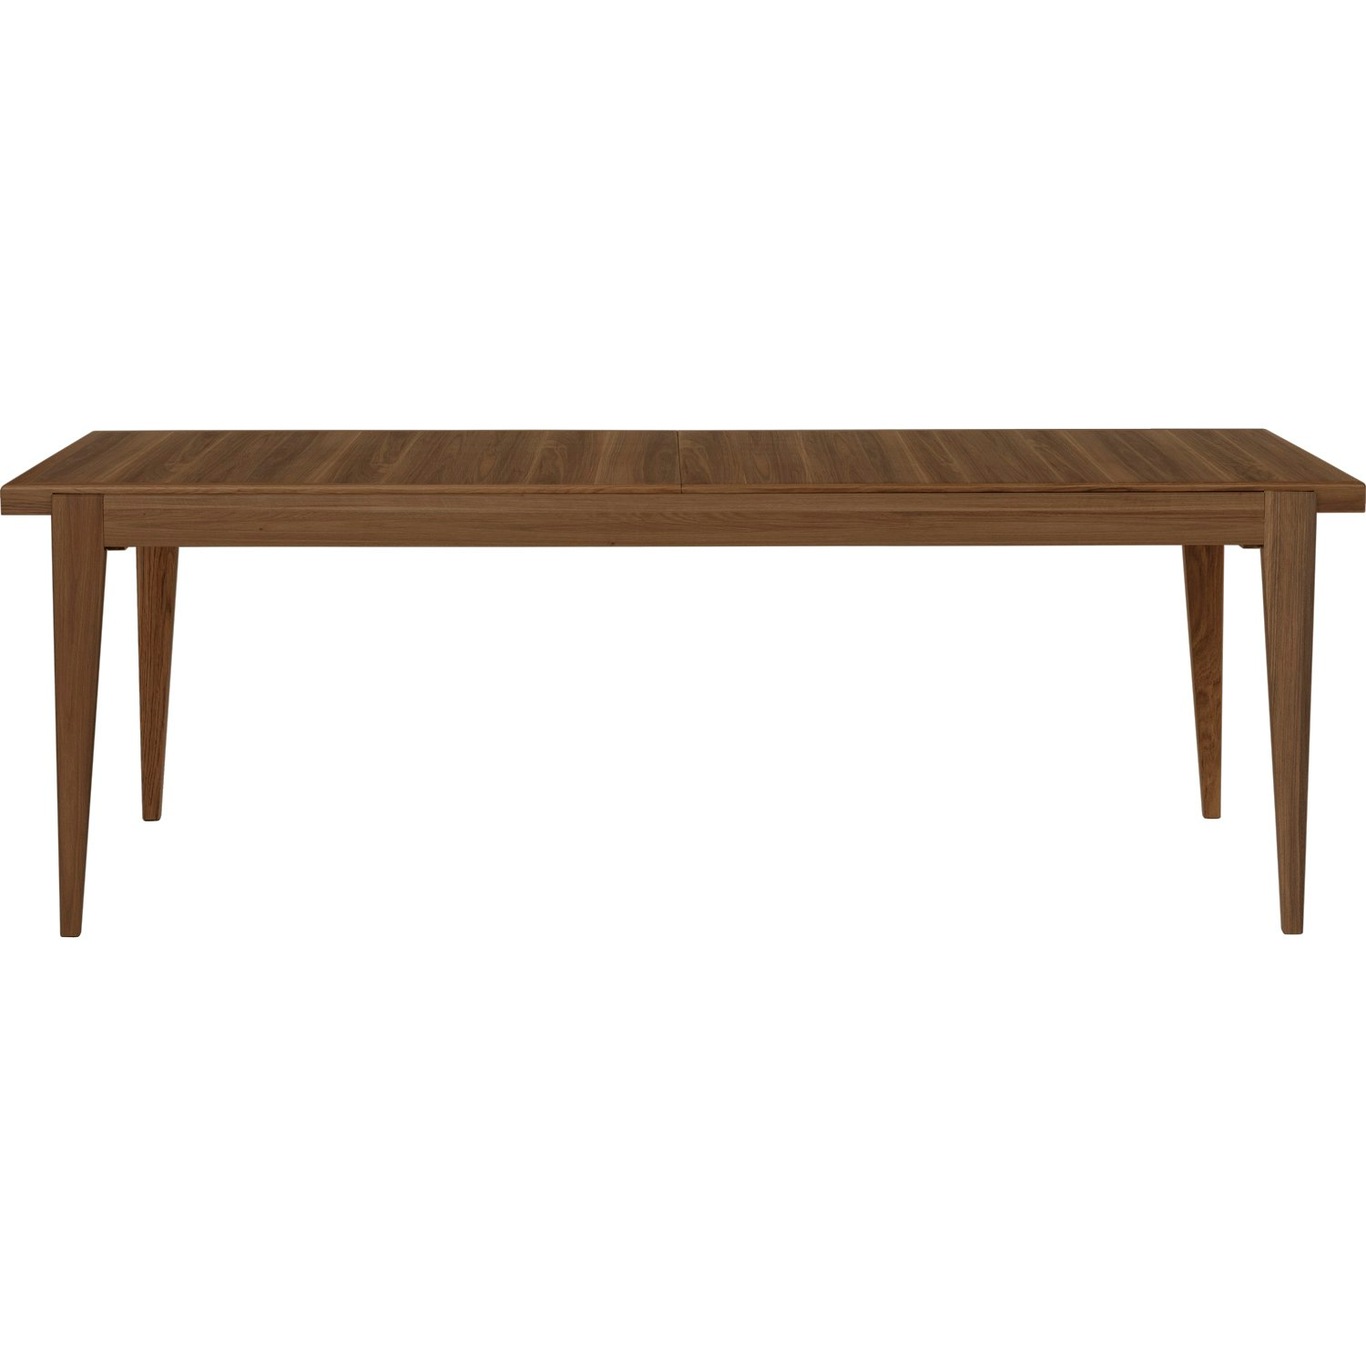 S-Table Esstisch Erweiterbar 95x220 cm, Walnussfarben